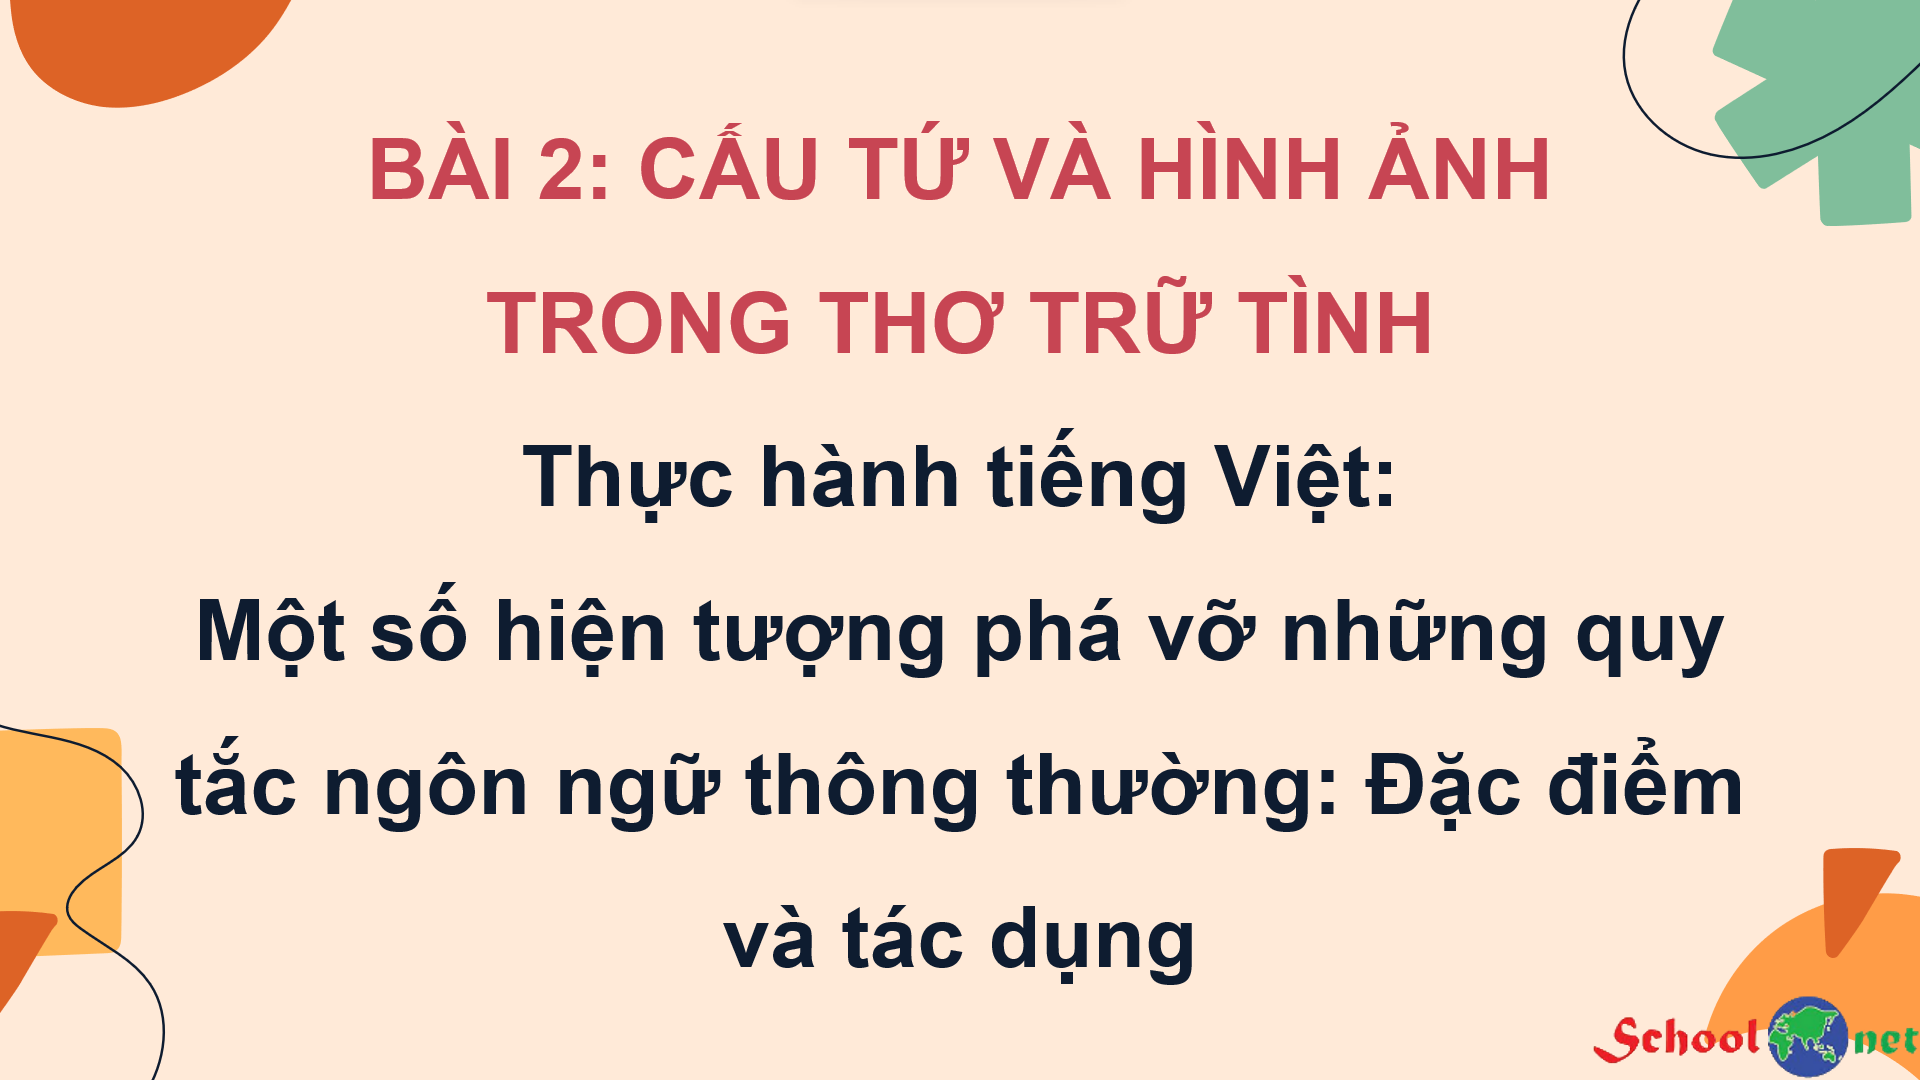 Bài 2: Thực hành tiếng Việt: Một số hiện tượng phá vỡ những quy tắc ngôn ngữ thông thường: Đặc điểm và tác dụng - Bộ sách Kết nối tri thức với cuộc sống